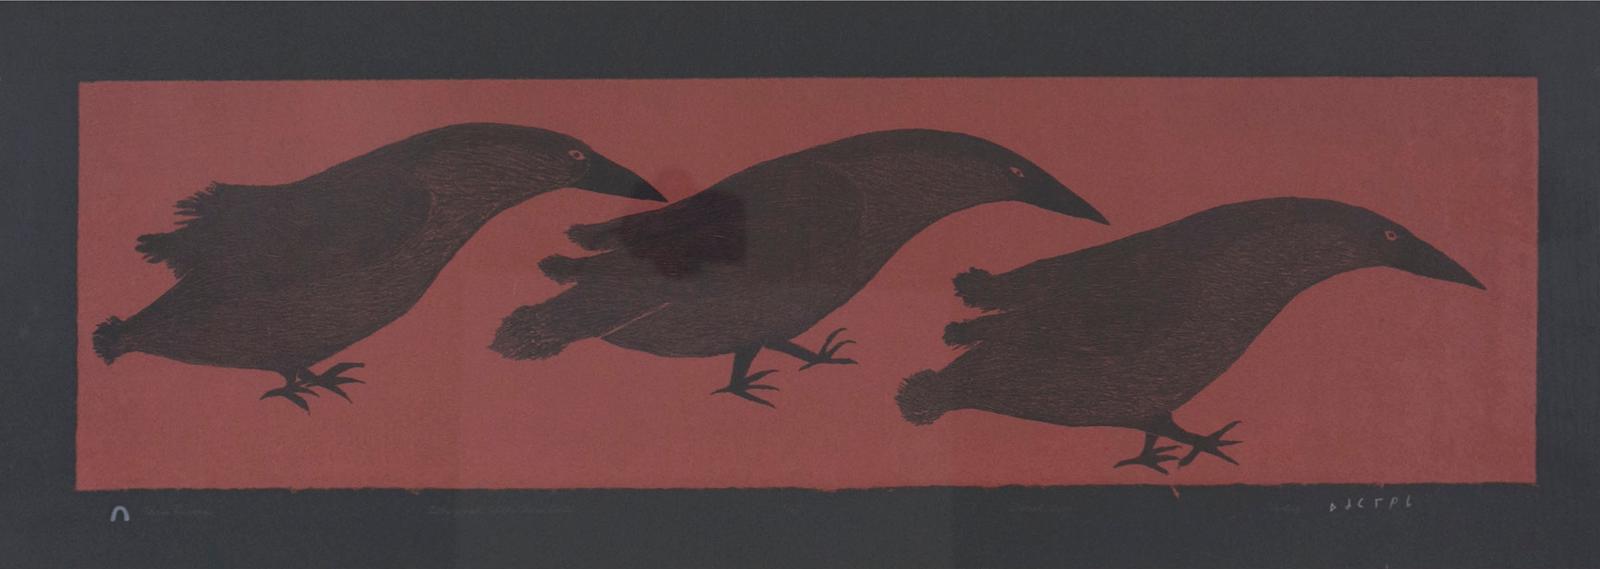 Ohotaq (Oqutaq) Mikkigak (1936-2014) - Three Ravens, 2001